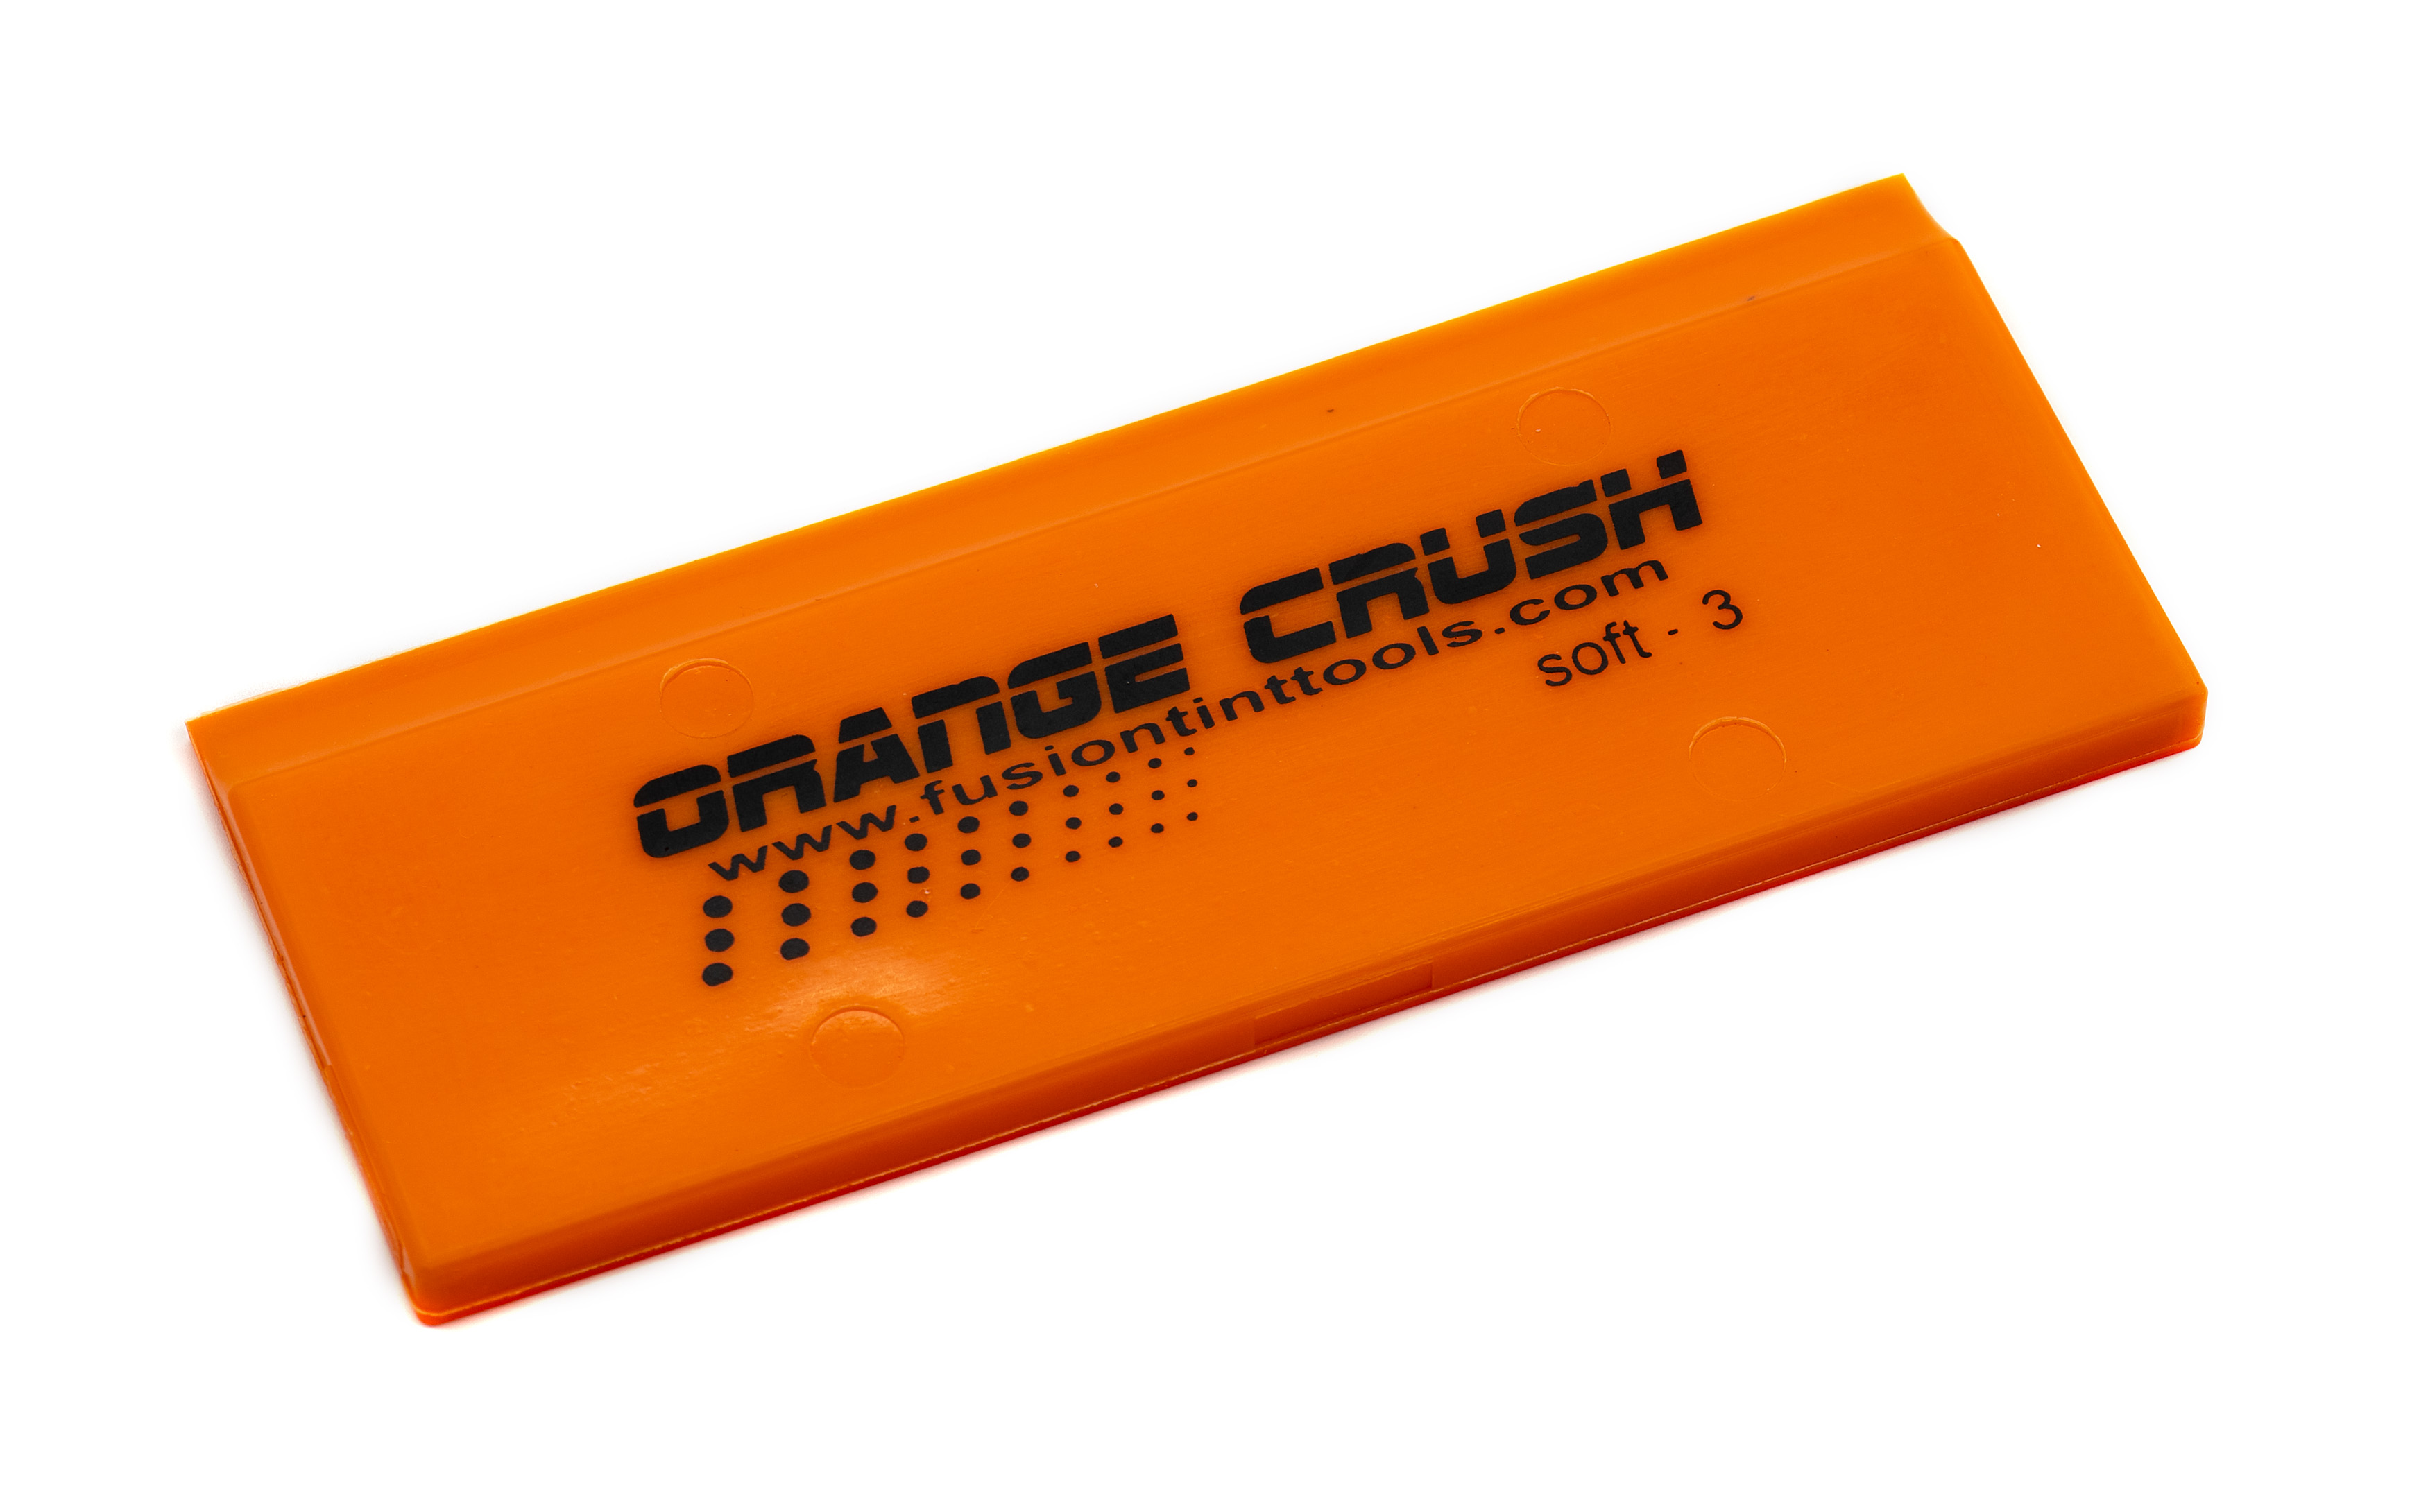 The Orange Crush